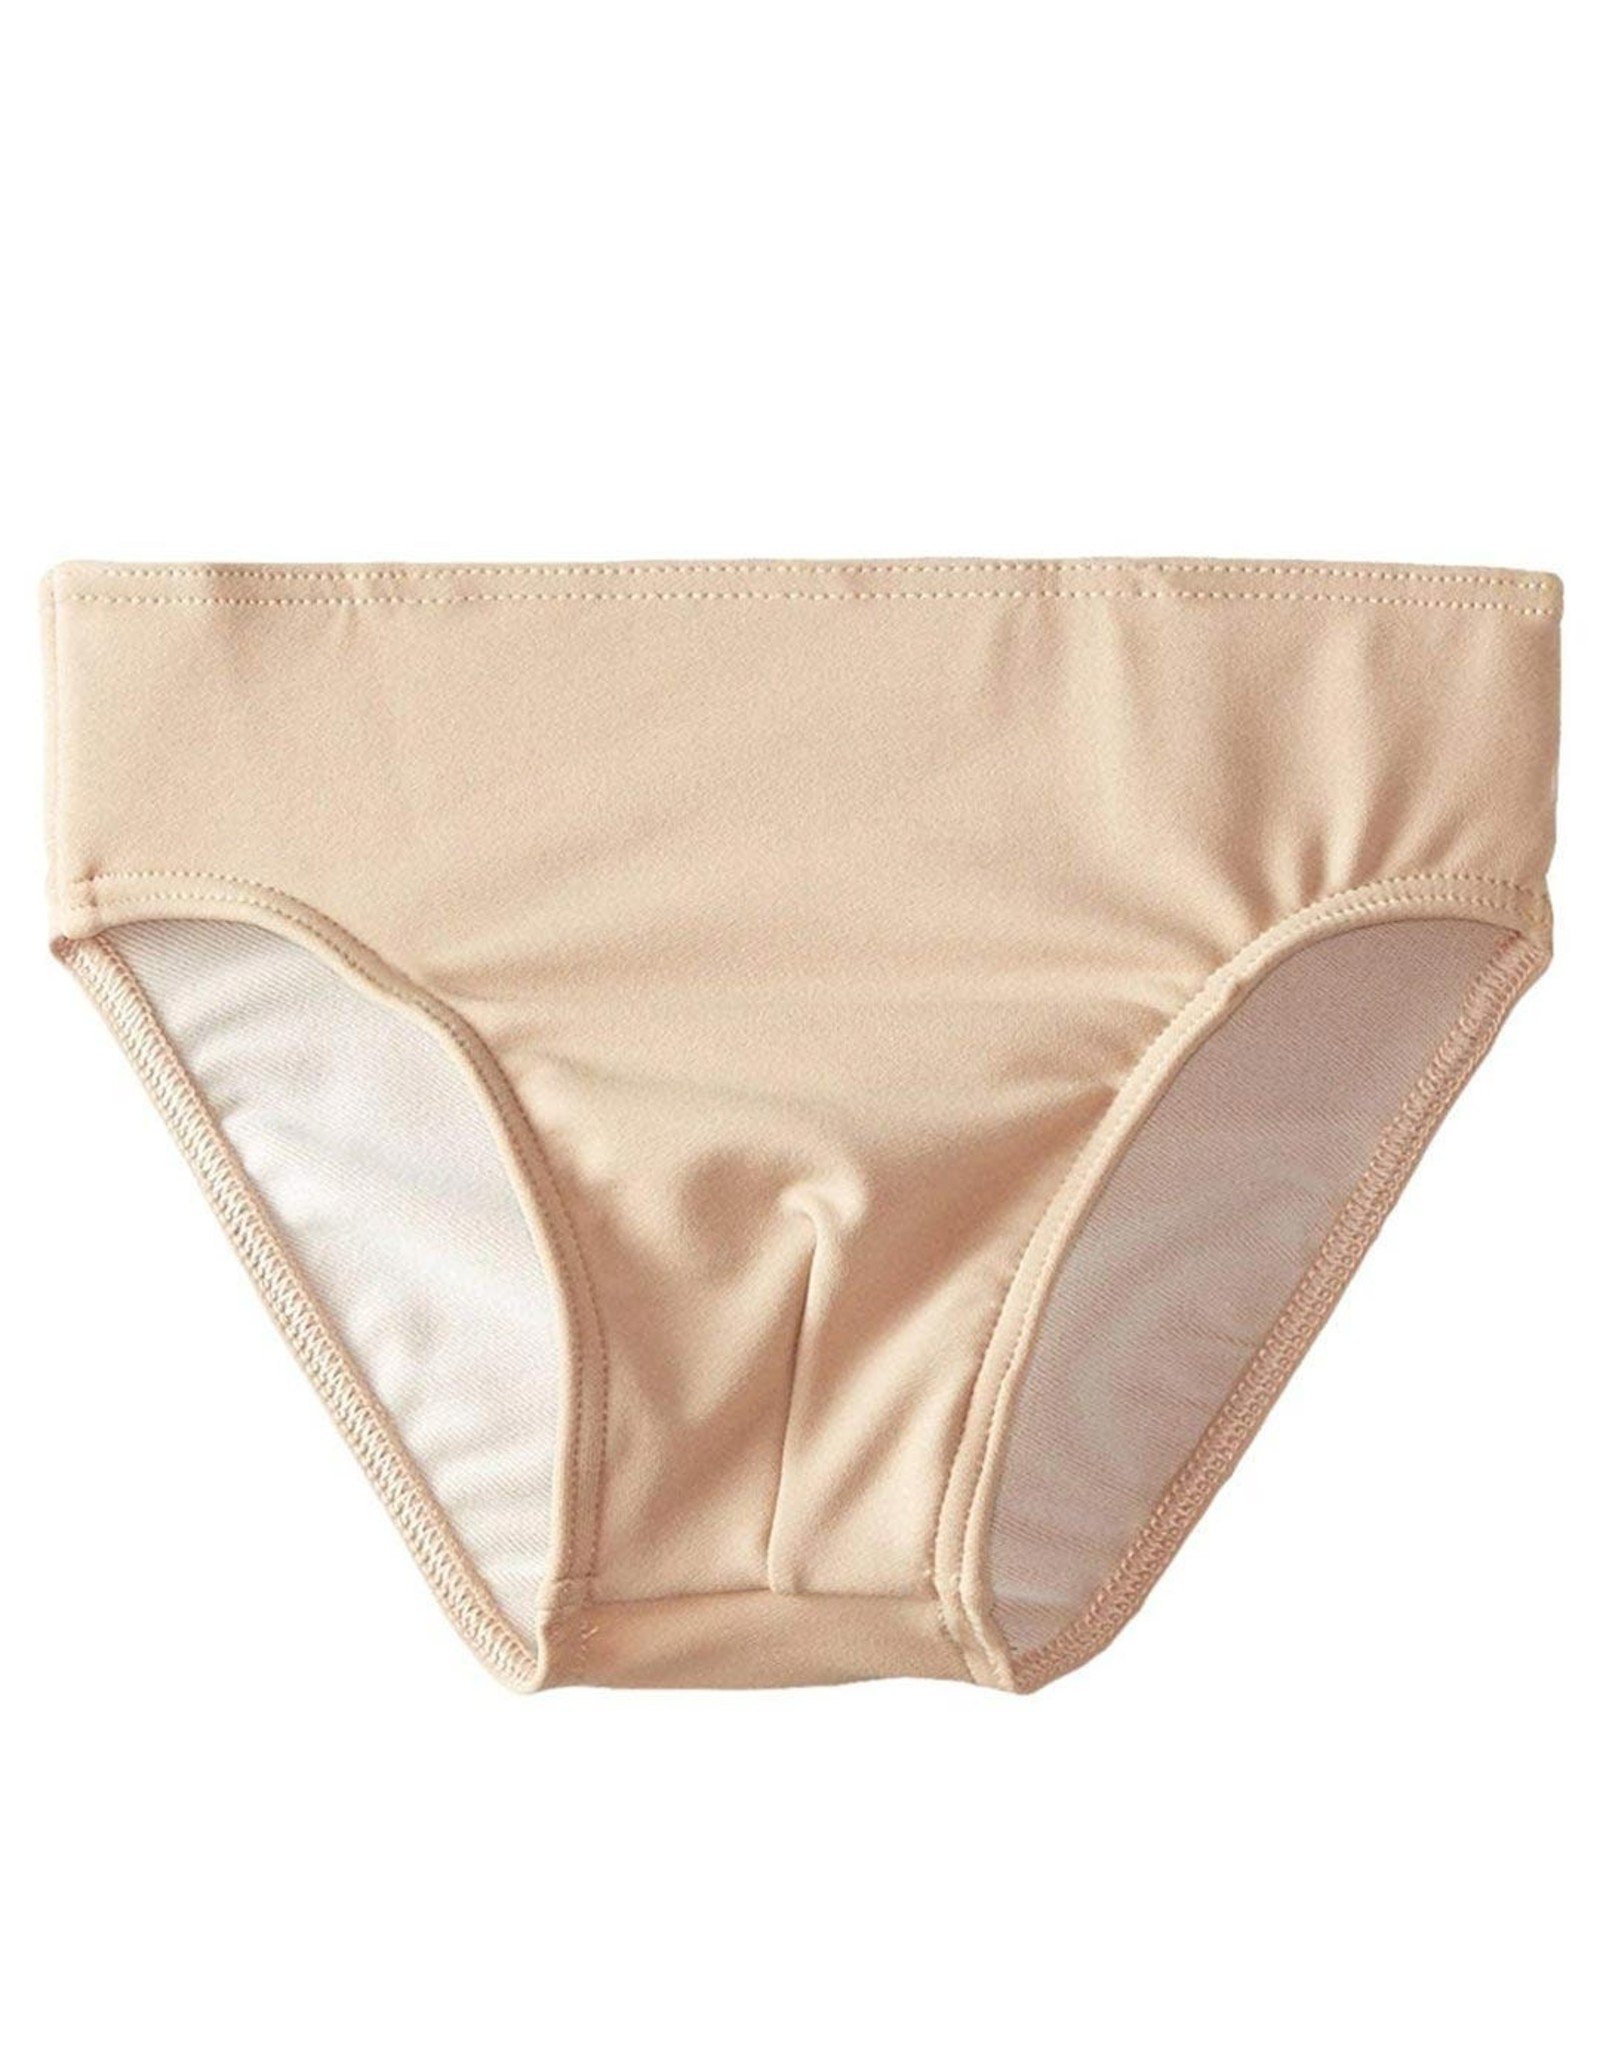 Spandex Ballet Dance Underwear  Nylon Ballet Dance Underwear